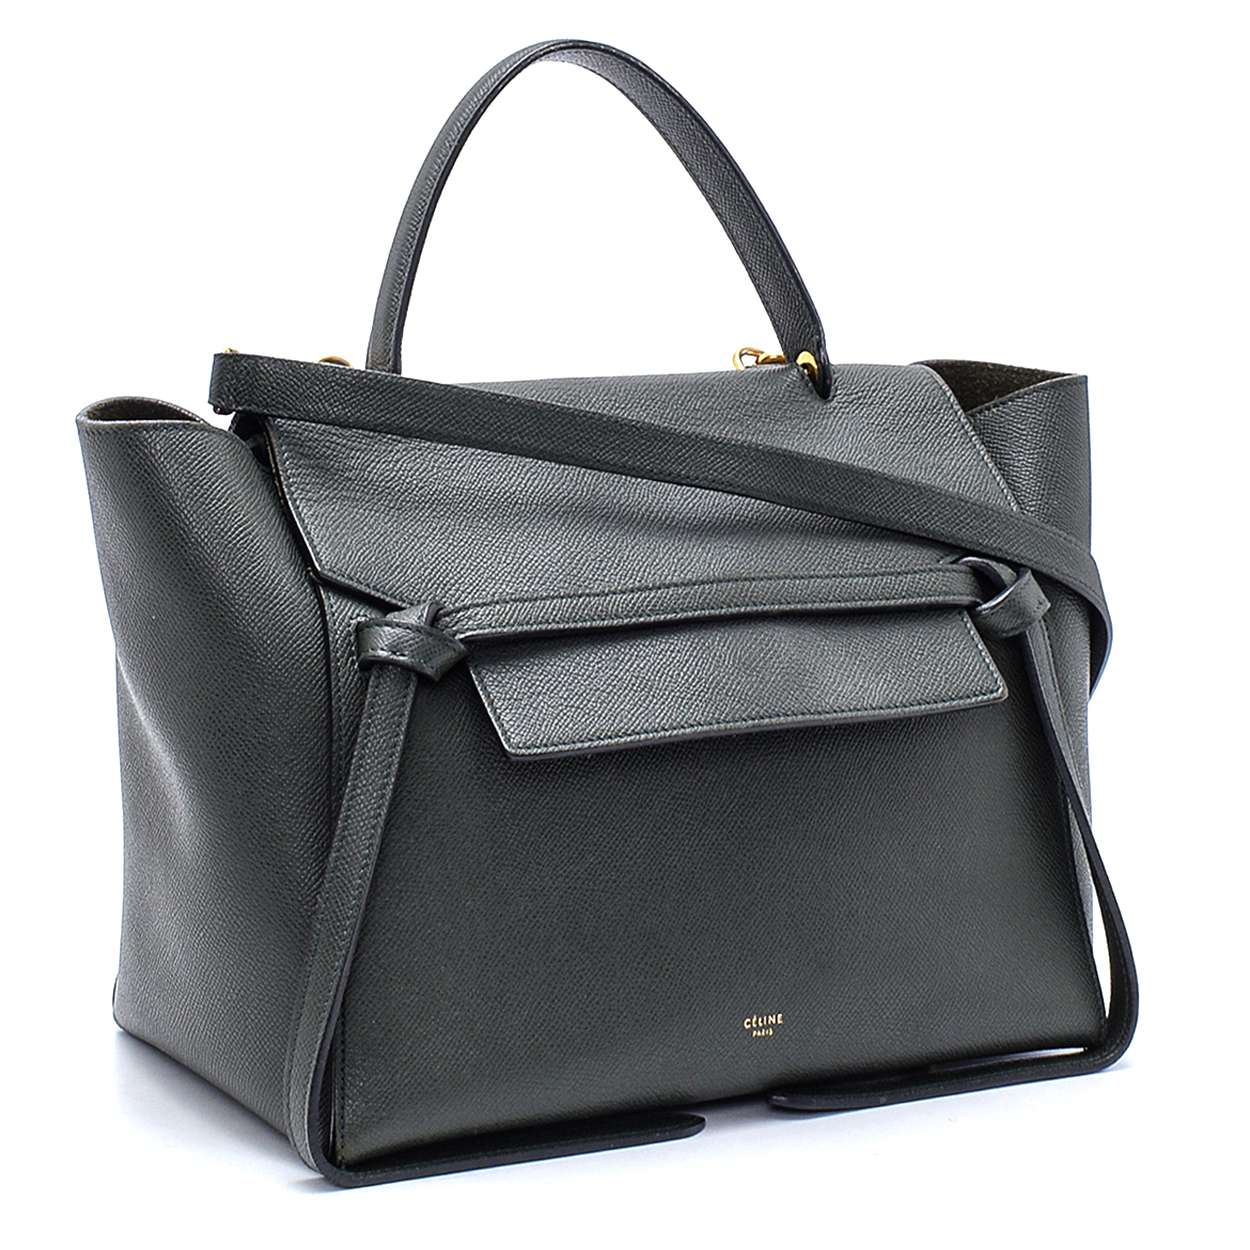 Celine - Khaki Granied Leather Medium Belt Bag